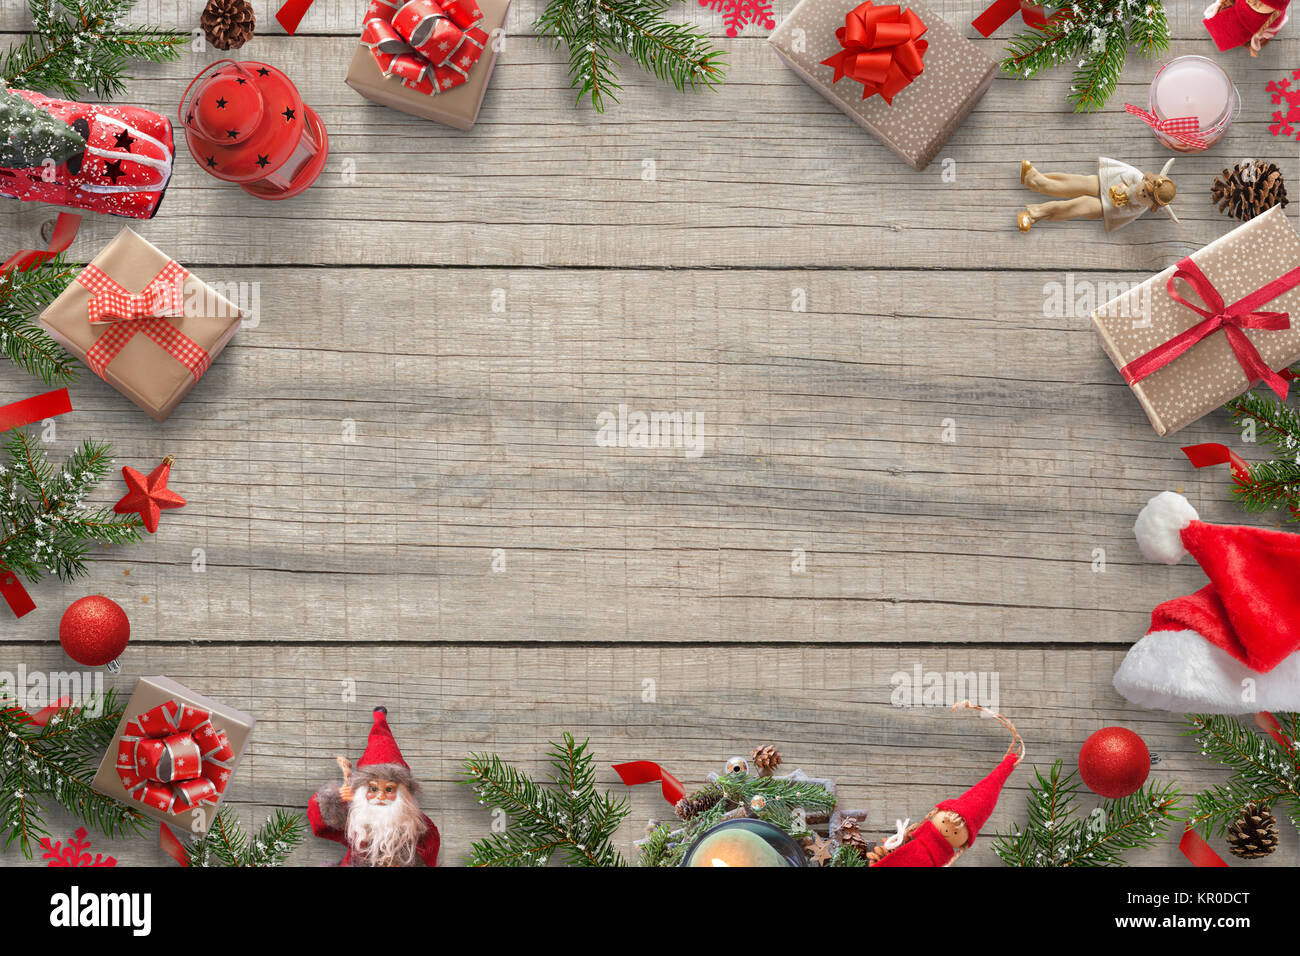 Hình nền trang trí Giáng Sinh với khoảng trống miễn phí sẽ đem đến cho bạn sự sáng tạo và sự lựa chọn tối ưu nhất cho màn hình của bạn. Hãy sử dụng không gian trống để thêm vào nó những thông điệp, hình ảnh hoặc bất cứ thứ gì mà bạn nghĩ là phù hợp với chủ đề Giáng Sinh của mình.